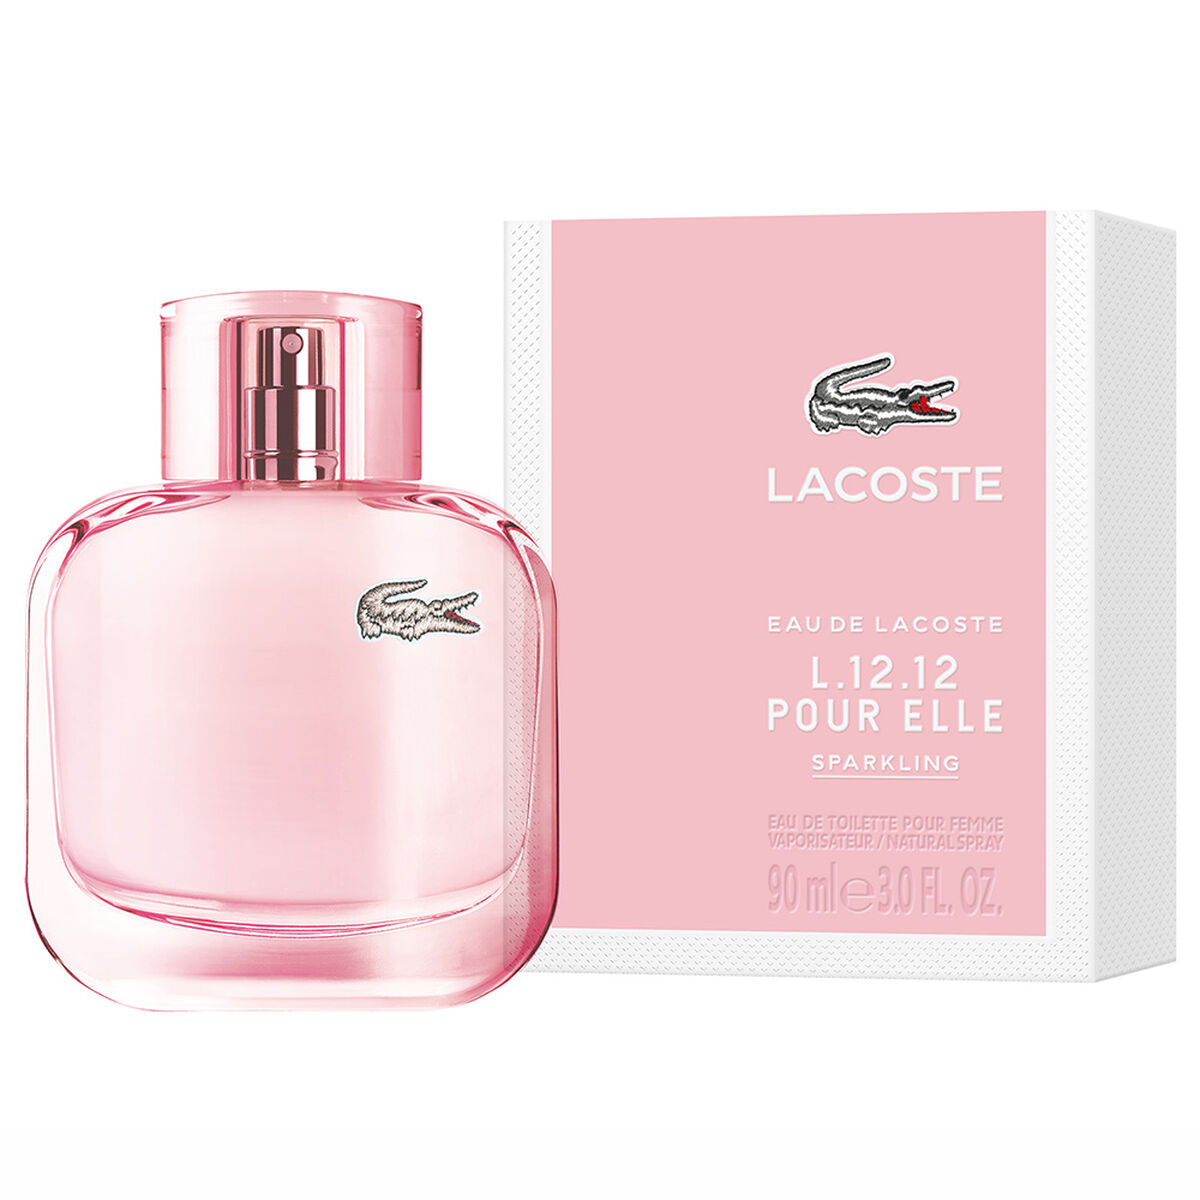 Perfume Lacoste L.12.12 Pour Elle Sparkling EDT 90 ml